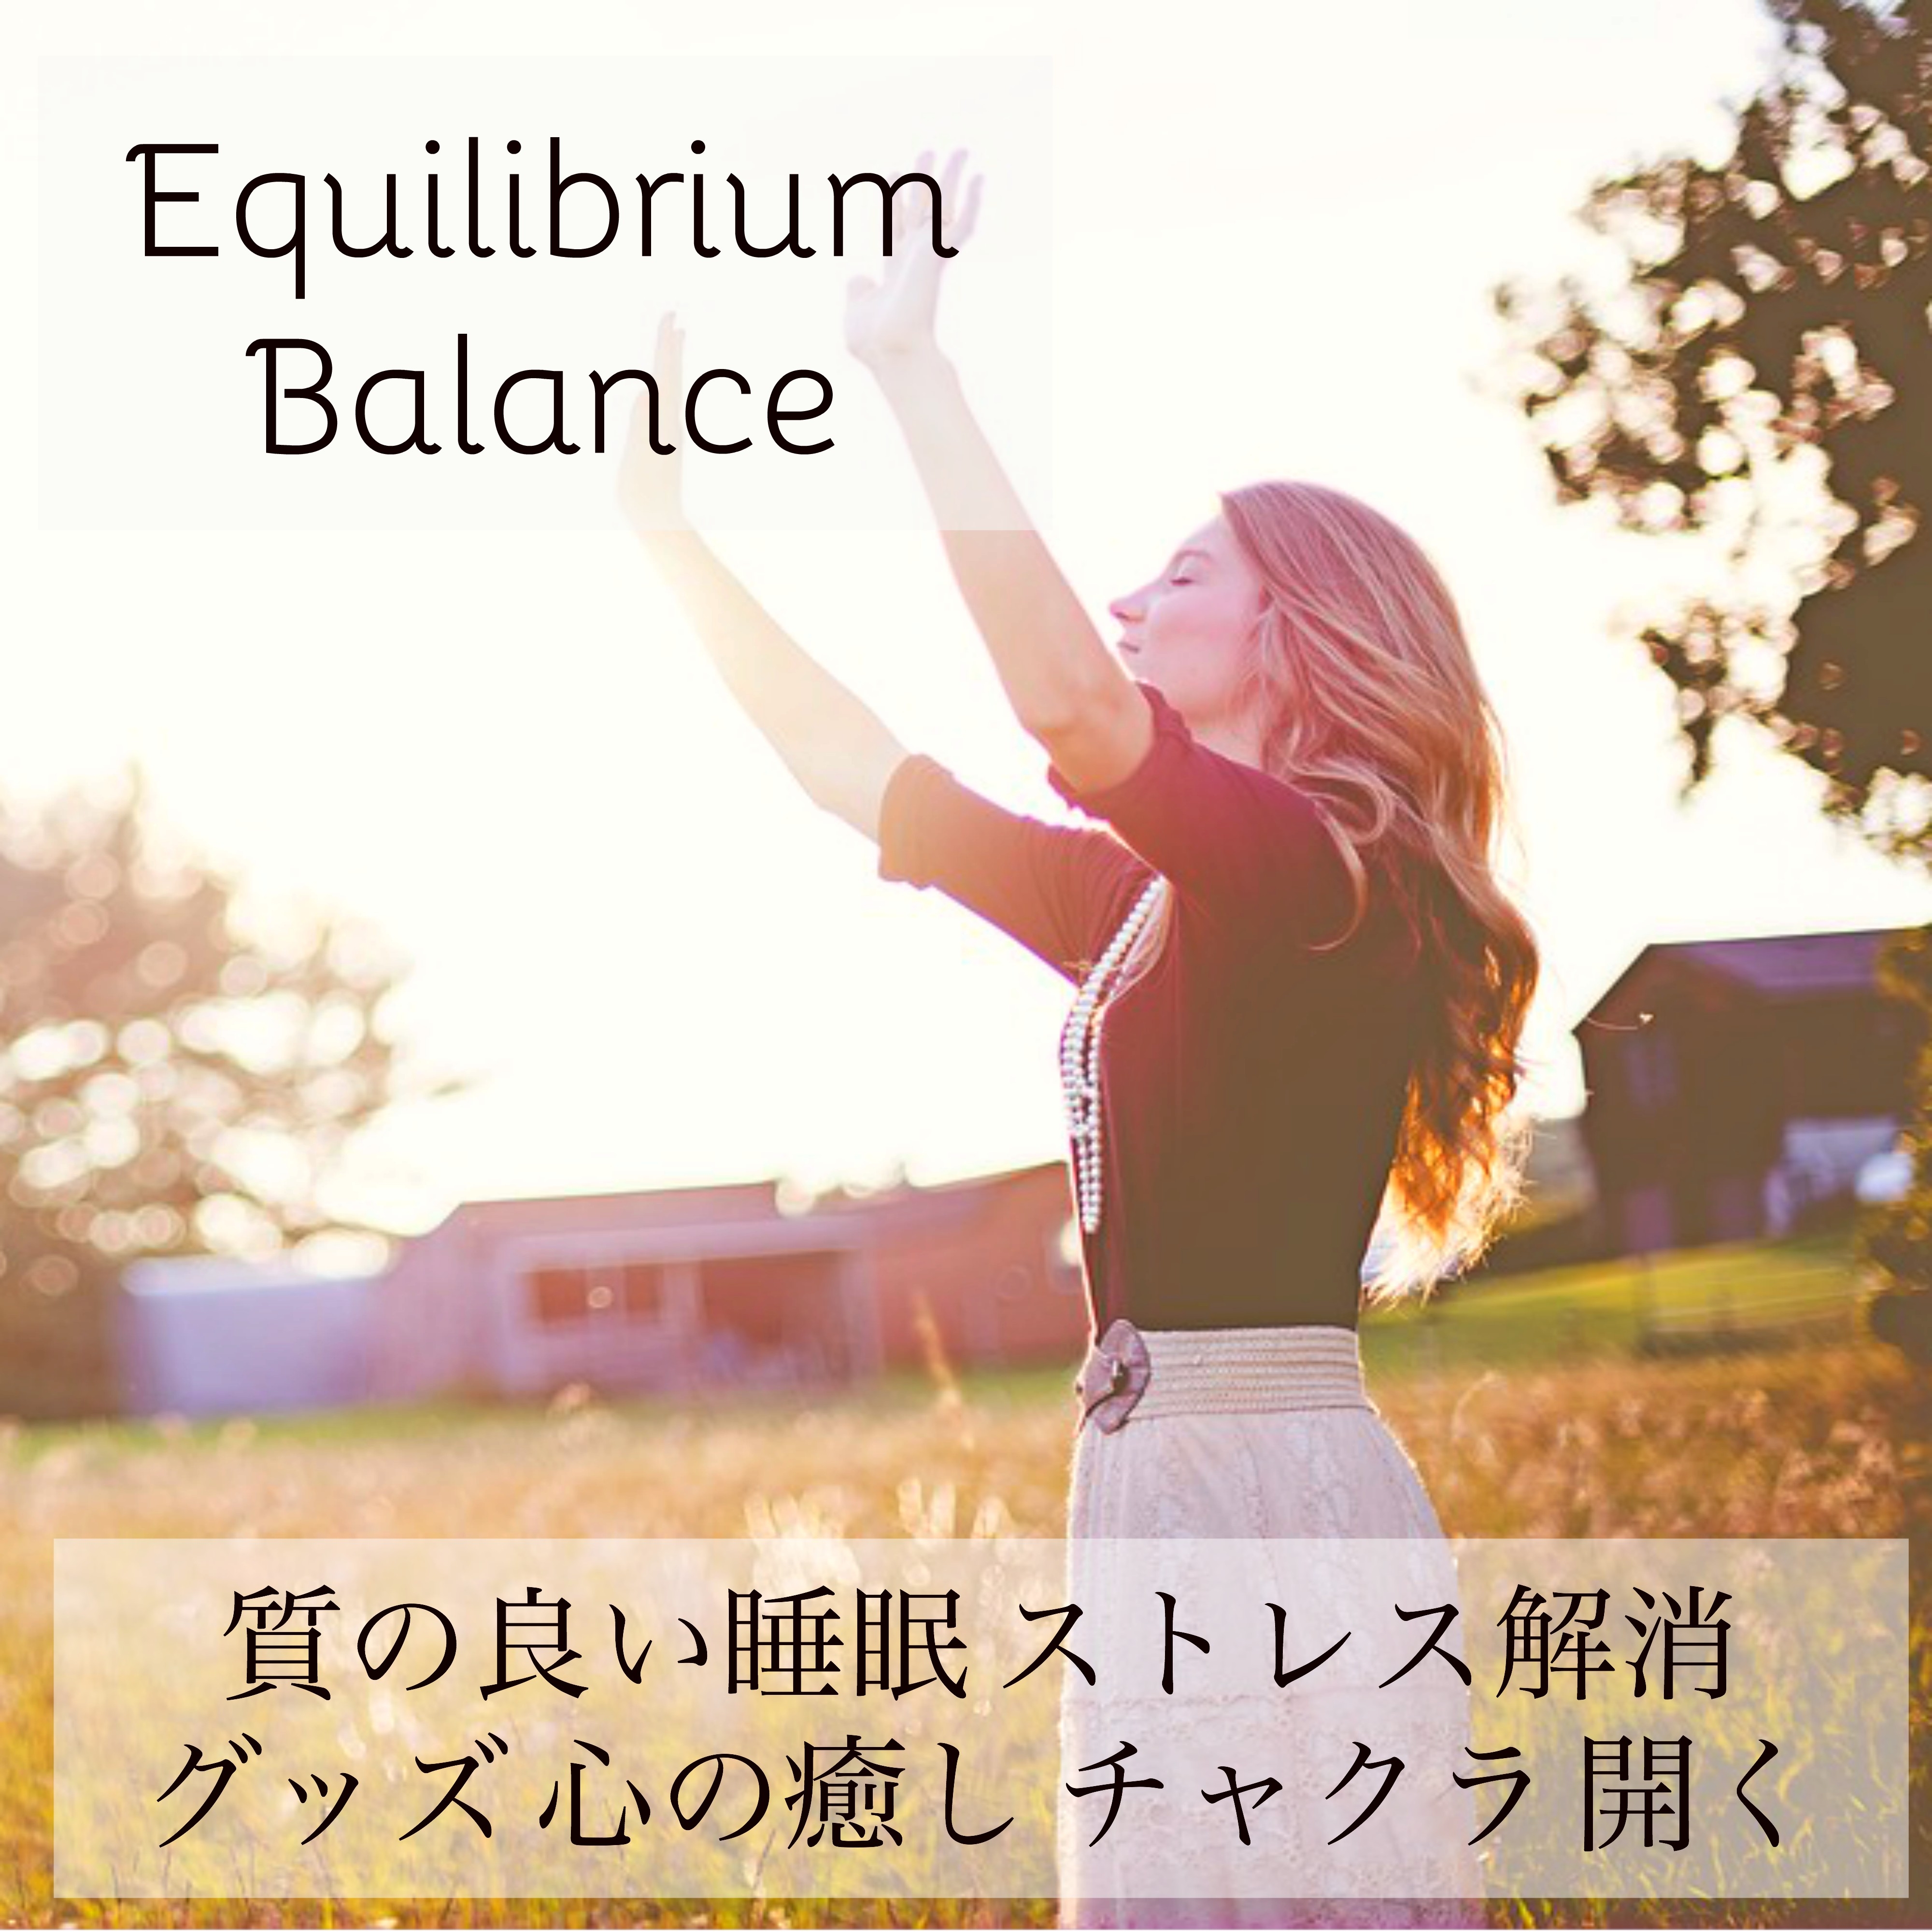 Equilibrium Balance  zhi liang shui mian jie xiao xin yu  kai